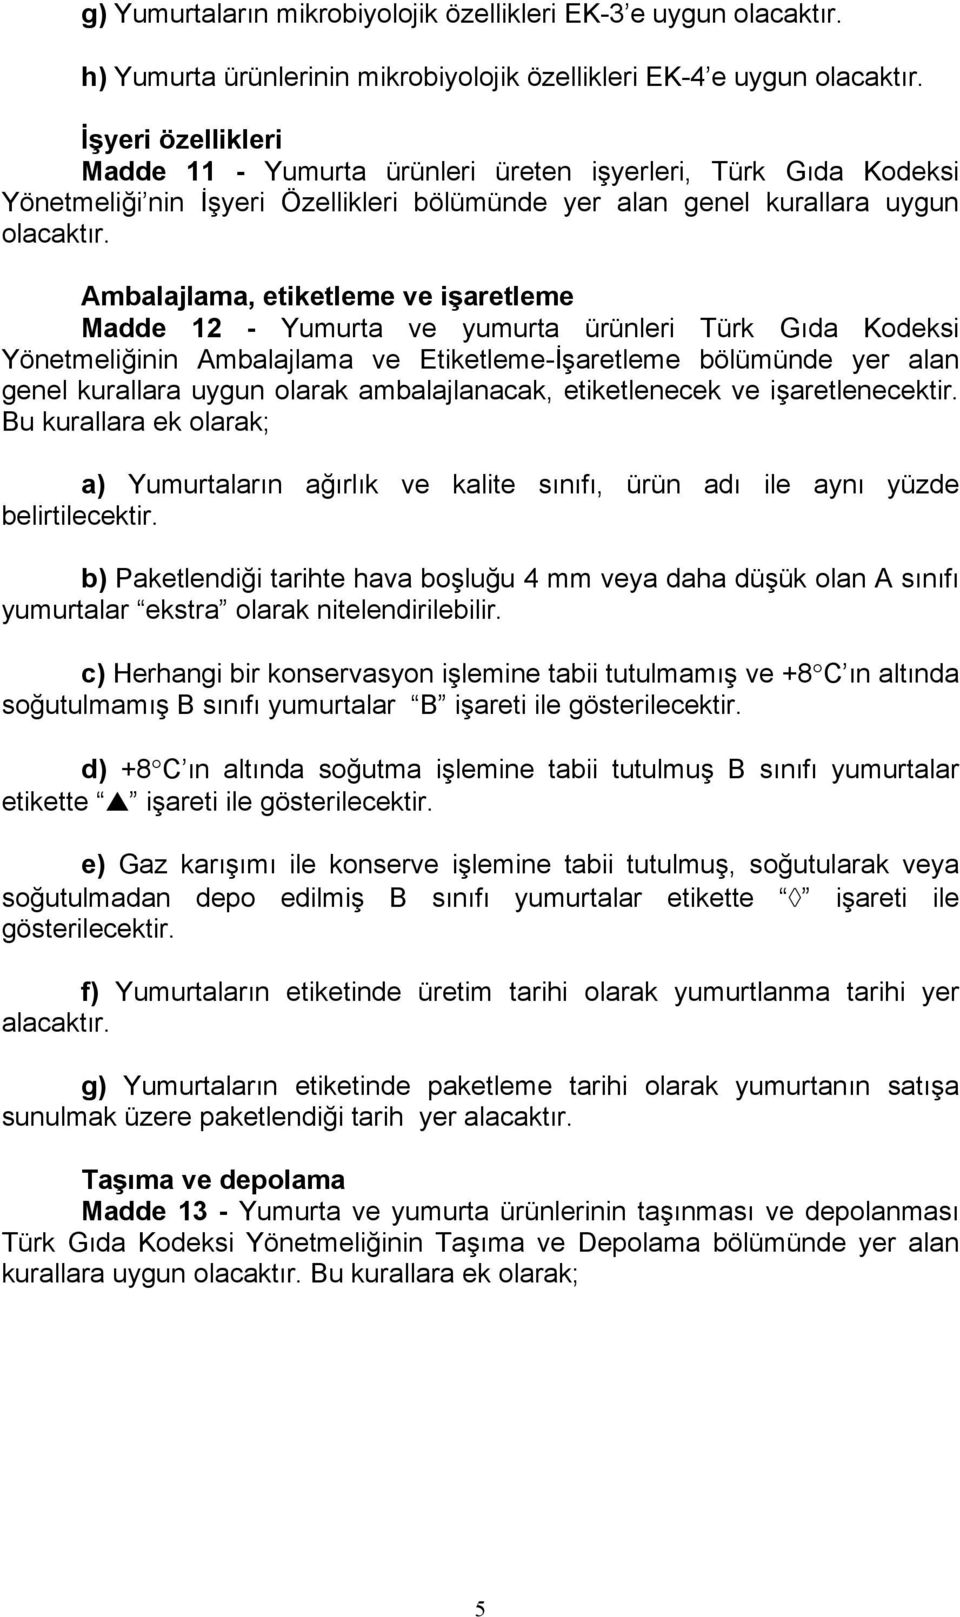 Ambalajlama, etiketleme ve işaretleme Madde 12 - Yumurta ve yumurta ürünleri Türk Gıda Kodeksi Yönetmeliğinin Ambalajlama ve Etiketleme-İşaretleme bölümünde yer alan genel kurallara uygun olarak